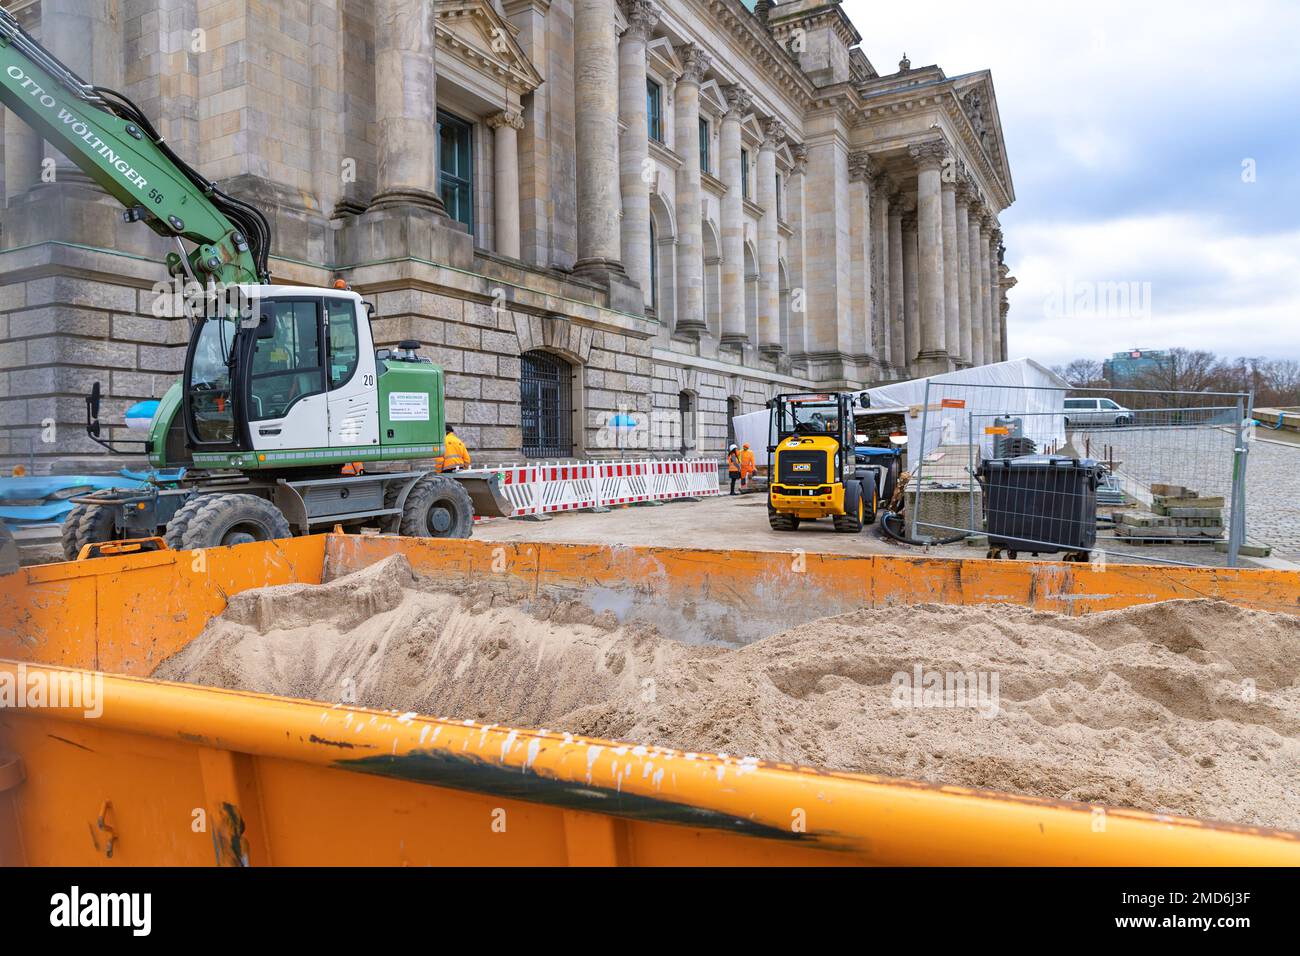 Les travaux de rénovation en face du bâtiment du Bundestag. Le Parlement fédéral allemand. Сonstruction équipement à Berlin. Banque D'Images